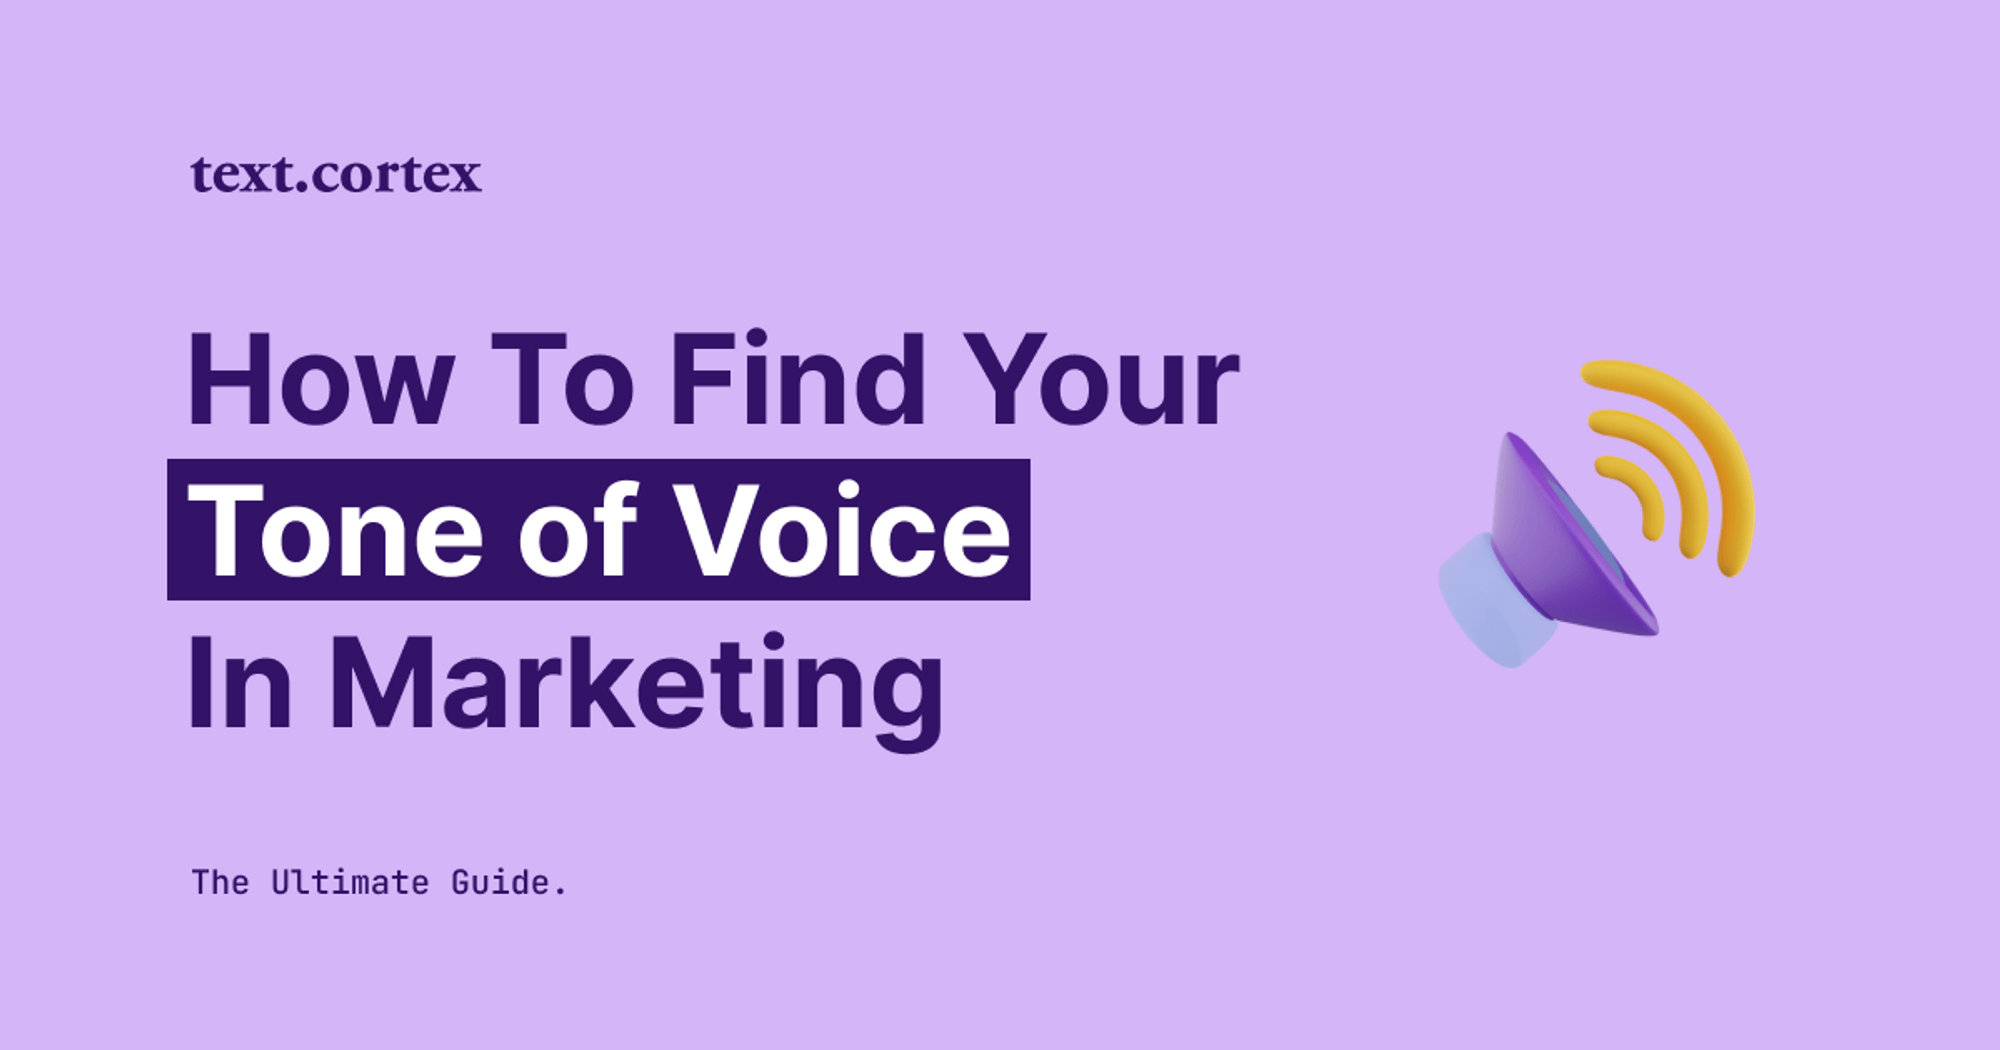 Cómo encontrar tu tono de voz en marketing - La guía definitiva